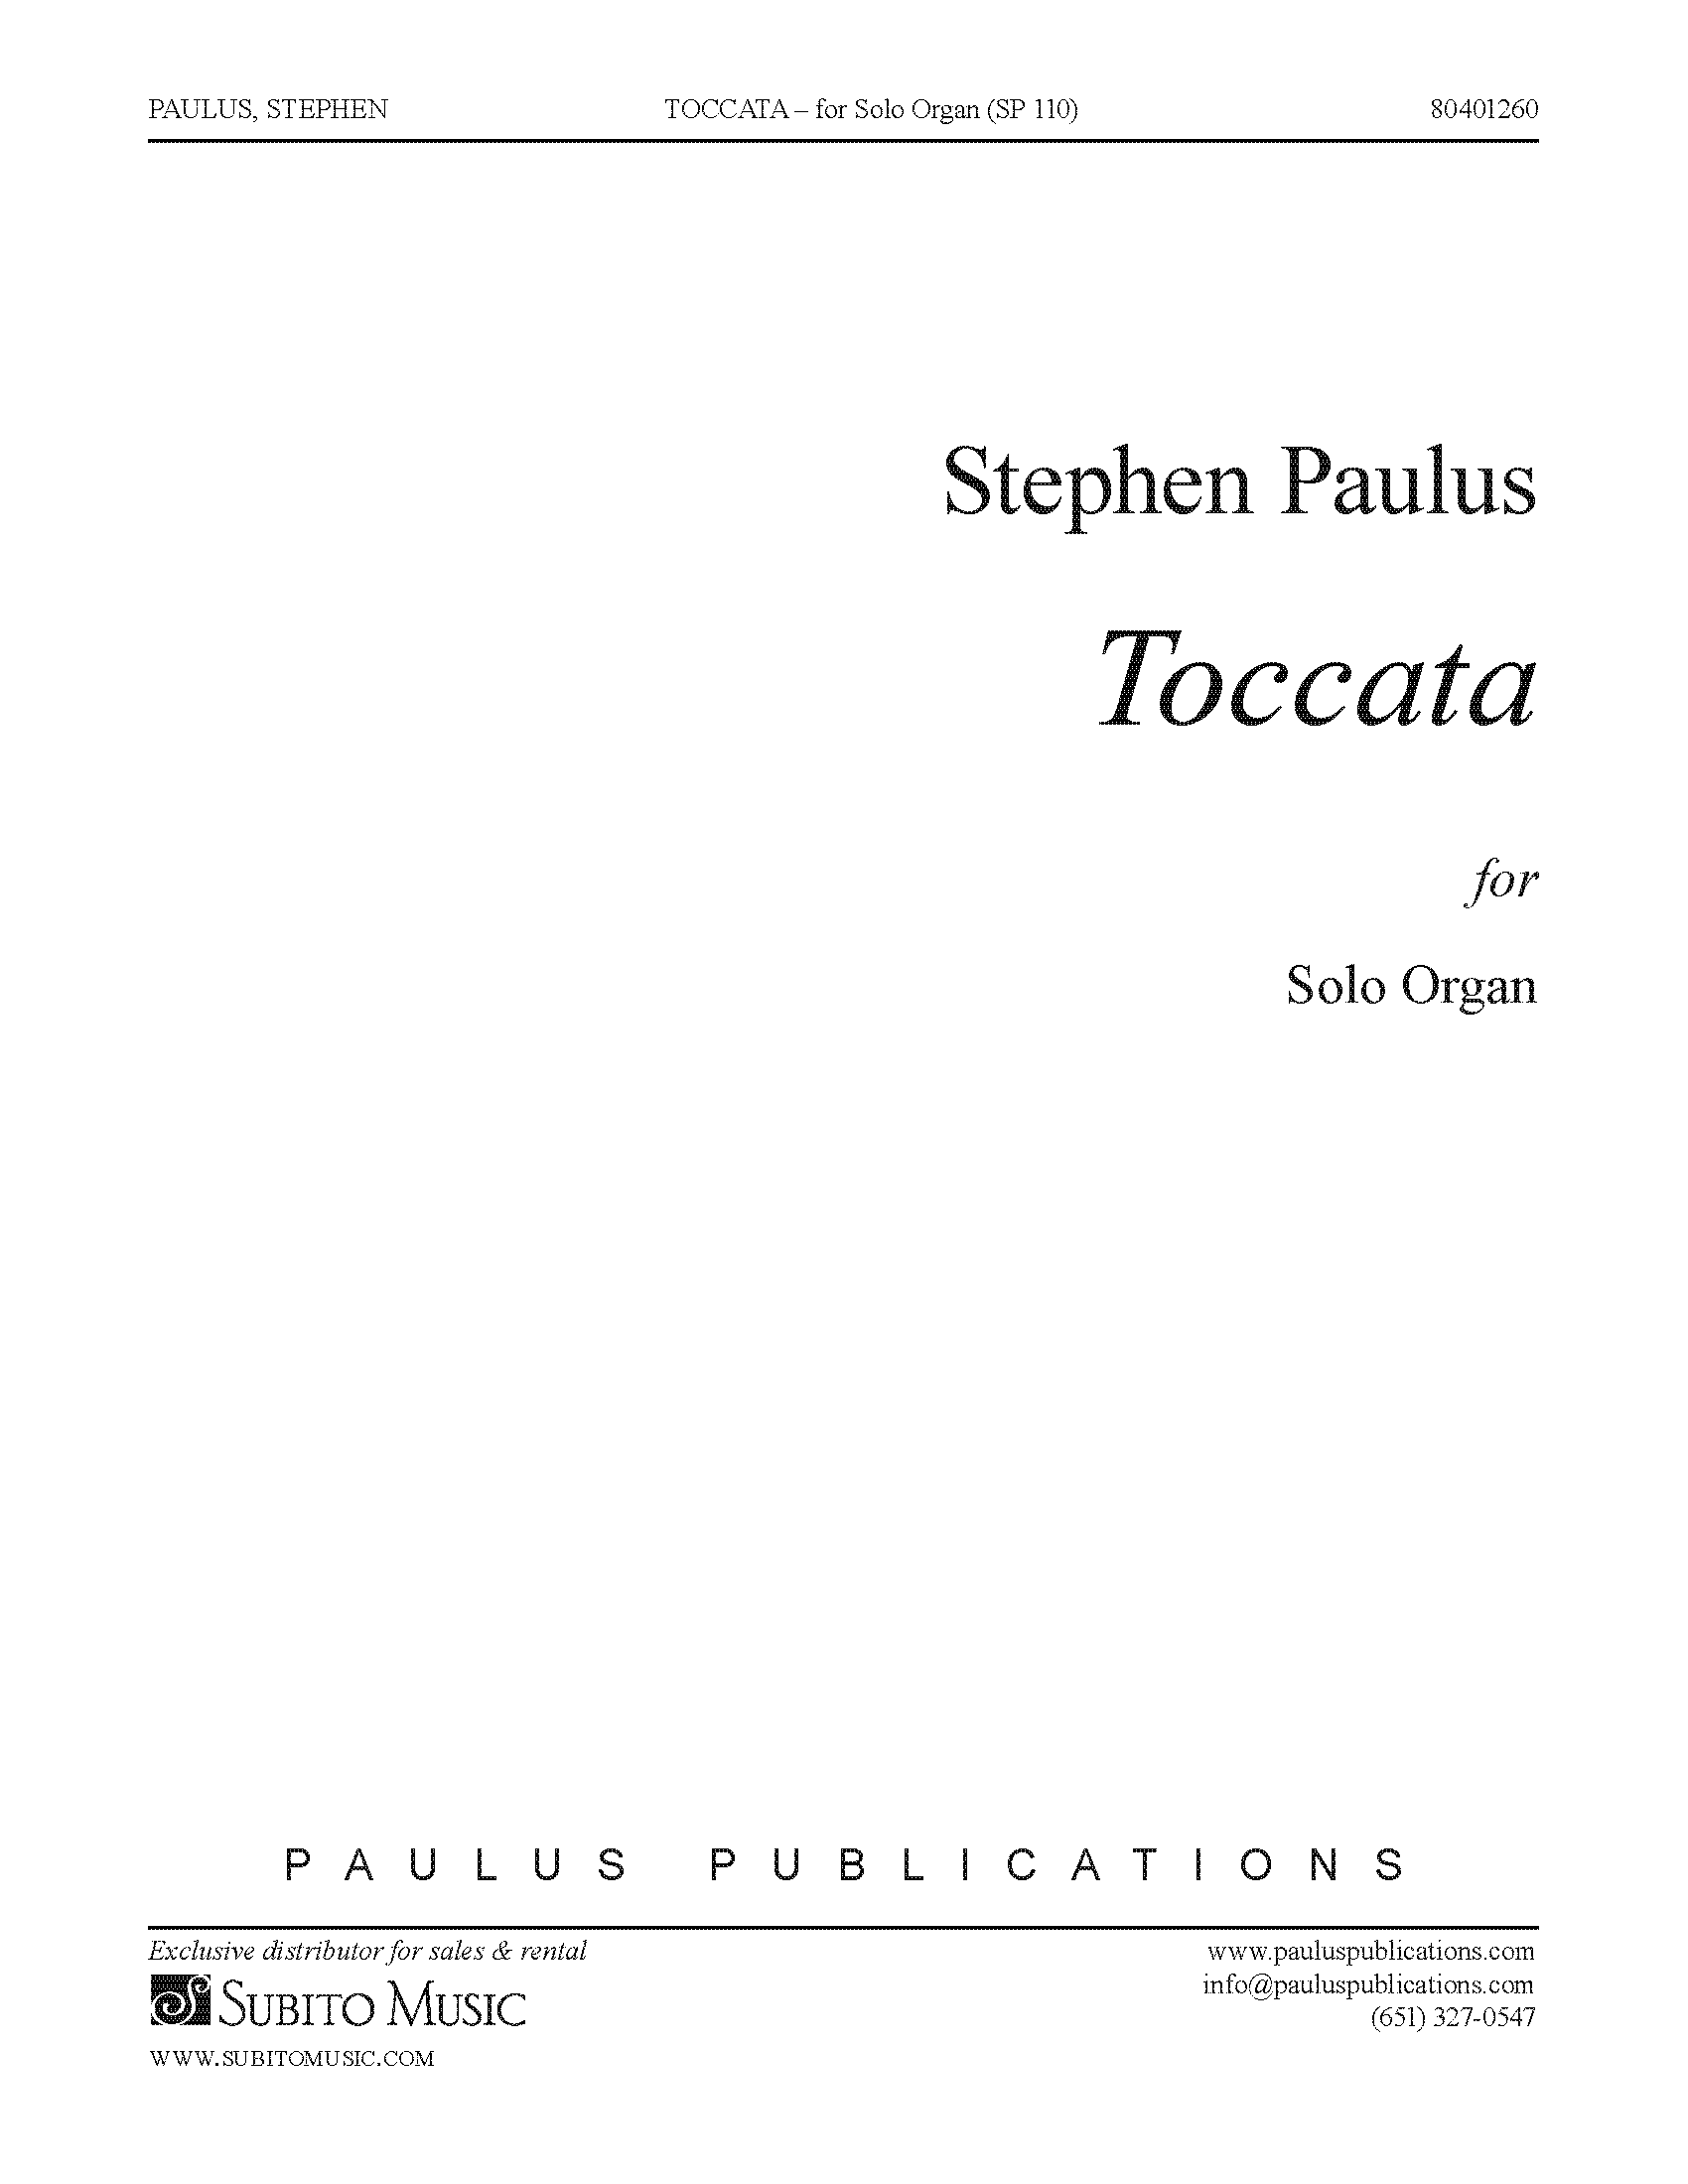 Toccata for Solo Organ